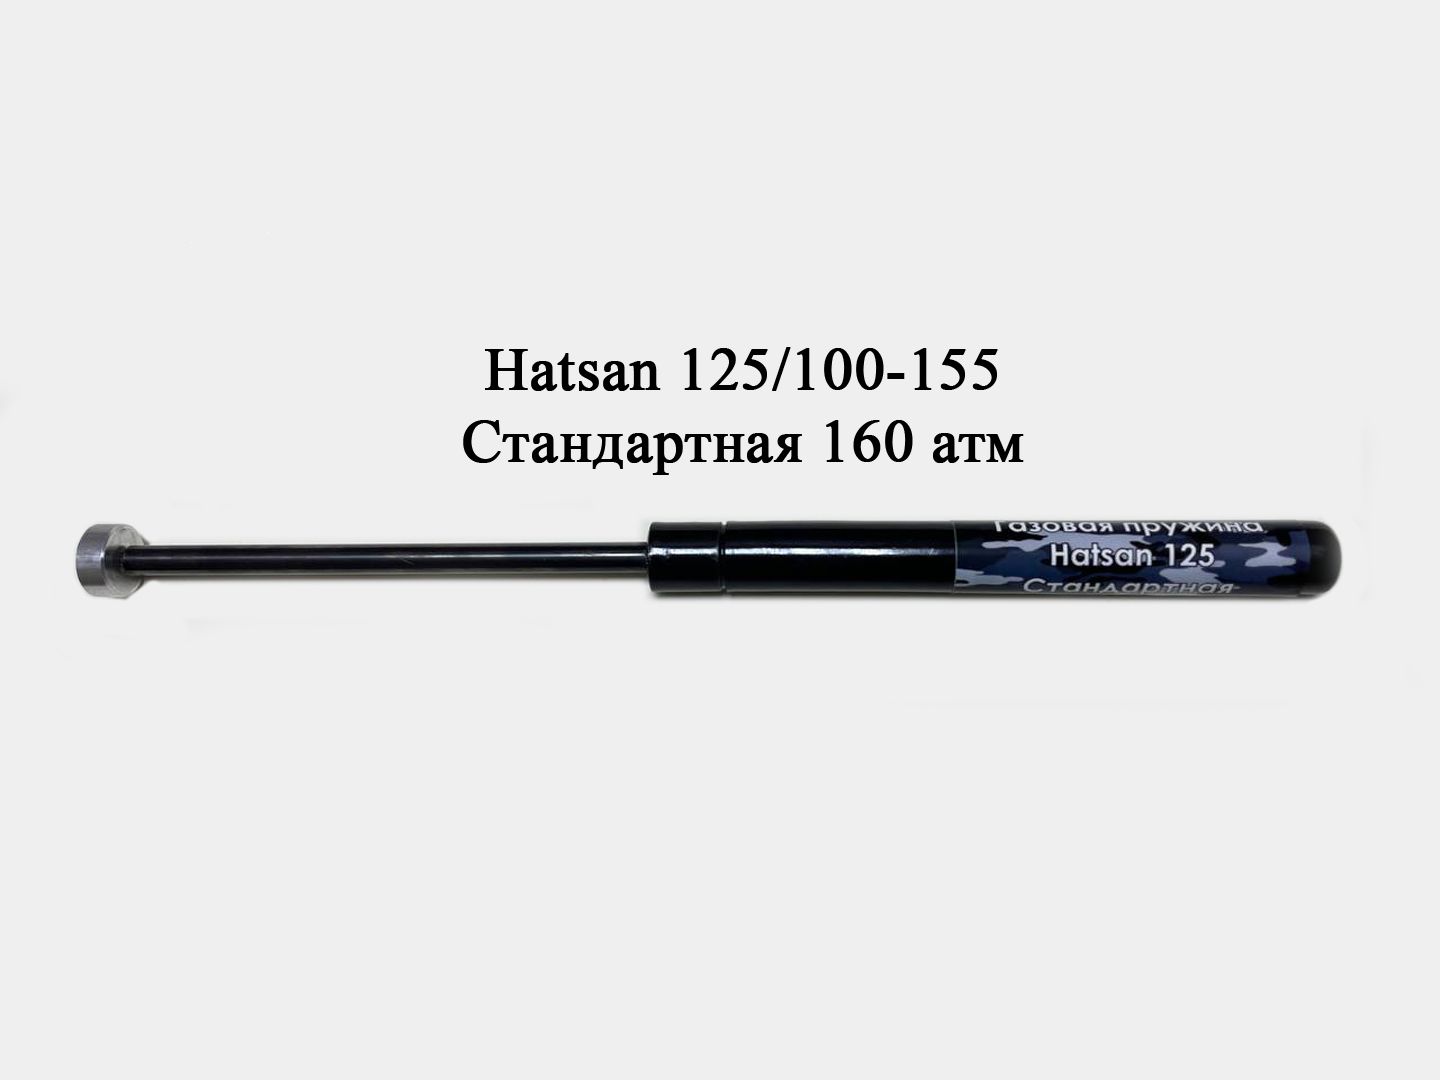 Газовая пружина для Hatsan 1000s. Газовая пружина на Хатсан 125. Пружина витая для Hatsan 125-155 с направляющей.